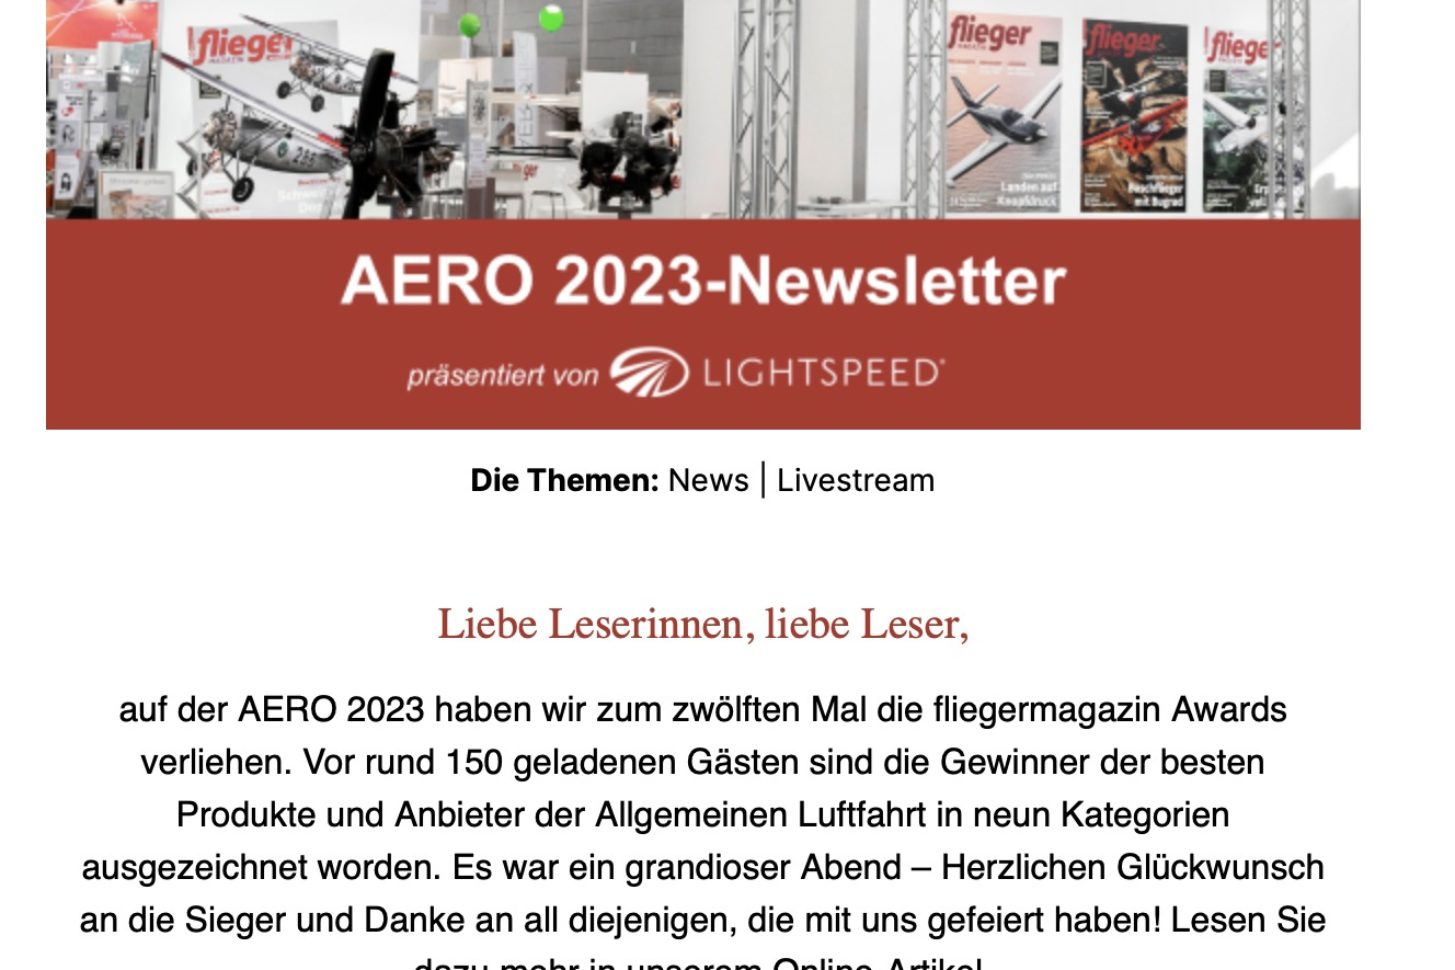 Jetzt anmelden: AERO-Newsletter abonnieren!